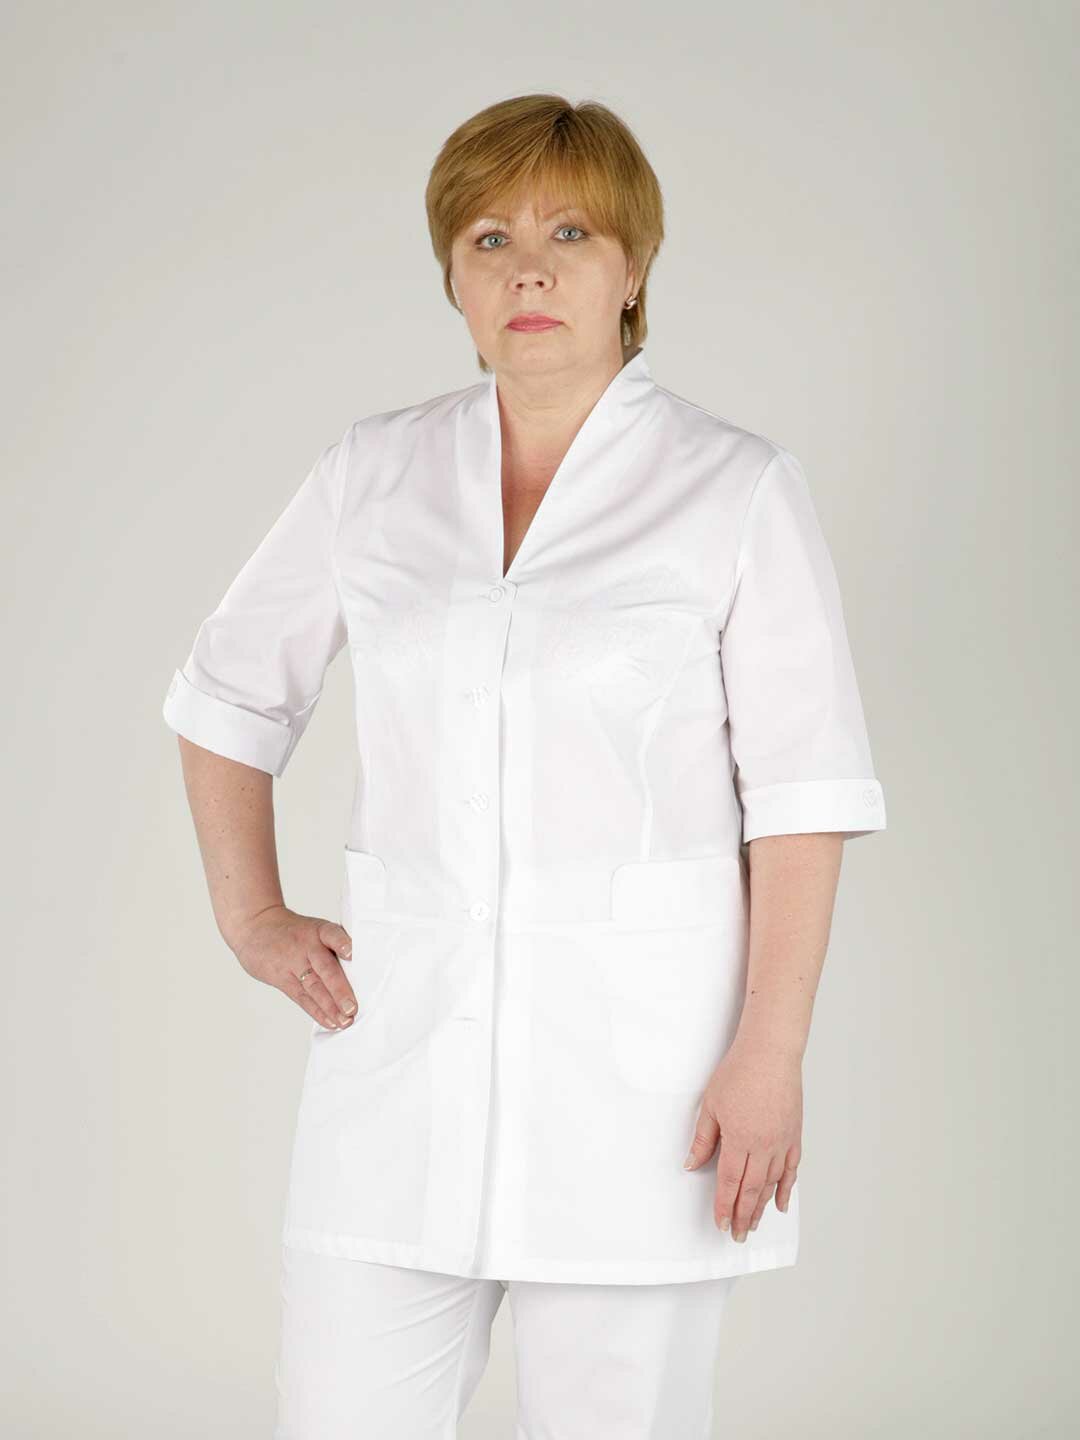 Куртка женская производитель Фабрика швейных изделий №3 модель М-408 рост 164 размер 48 ткань поликот-стрейч цвет белый